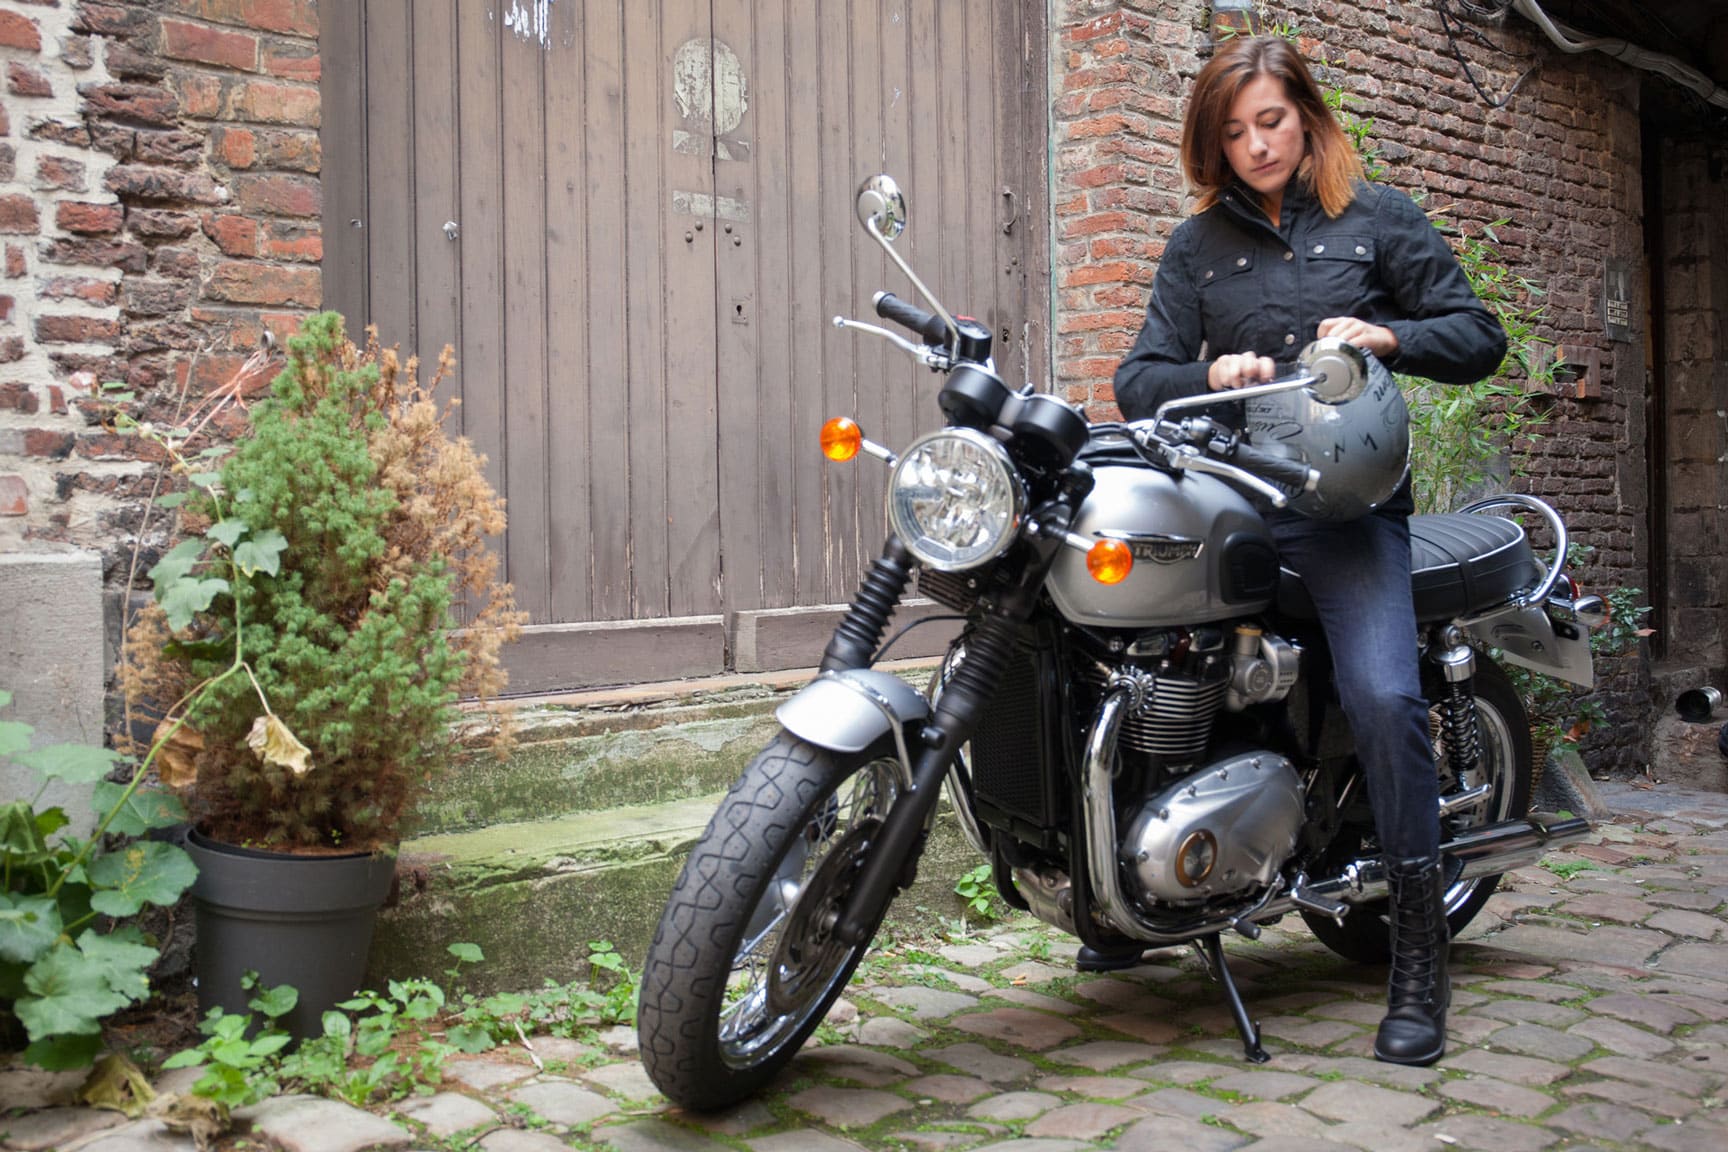 Les femmes aiment elles les motos ?